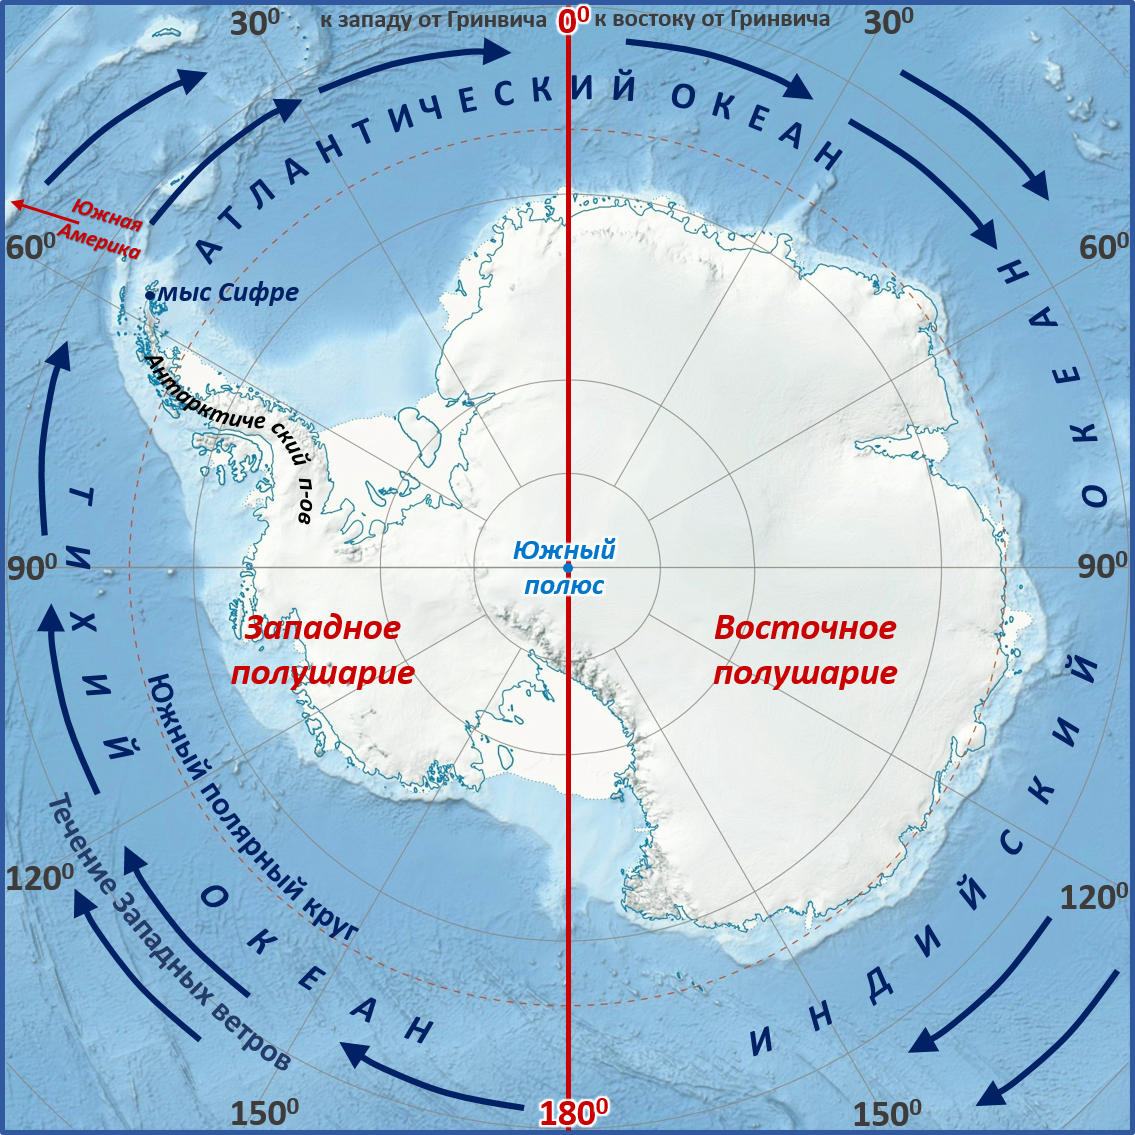 Полушария северного ледовитого океана. Мыс Сифре на карте Антарктиды. Моря: Амундсена, Беллинсгаузена, Росса, Уэдделла.. Мыс Сифре Антарктида. Южный полюс на карте Антарктиды.